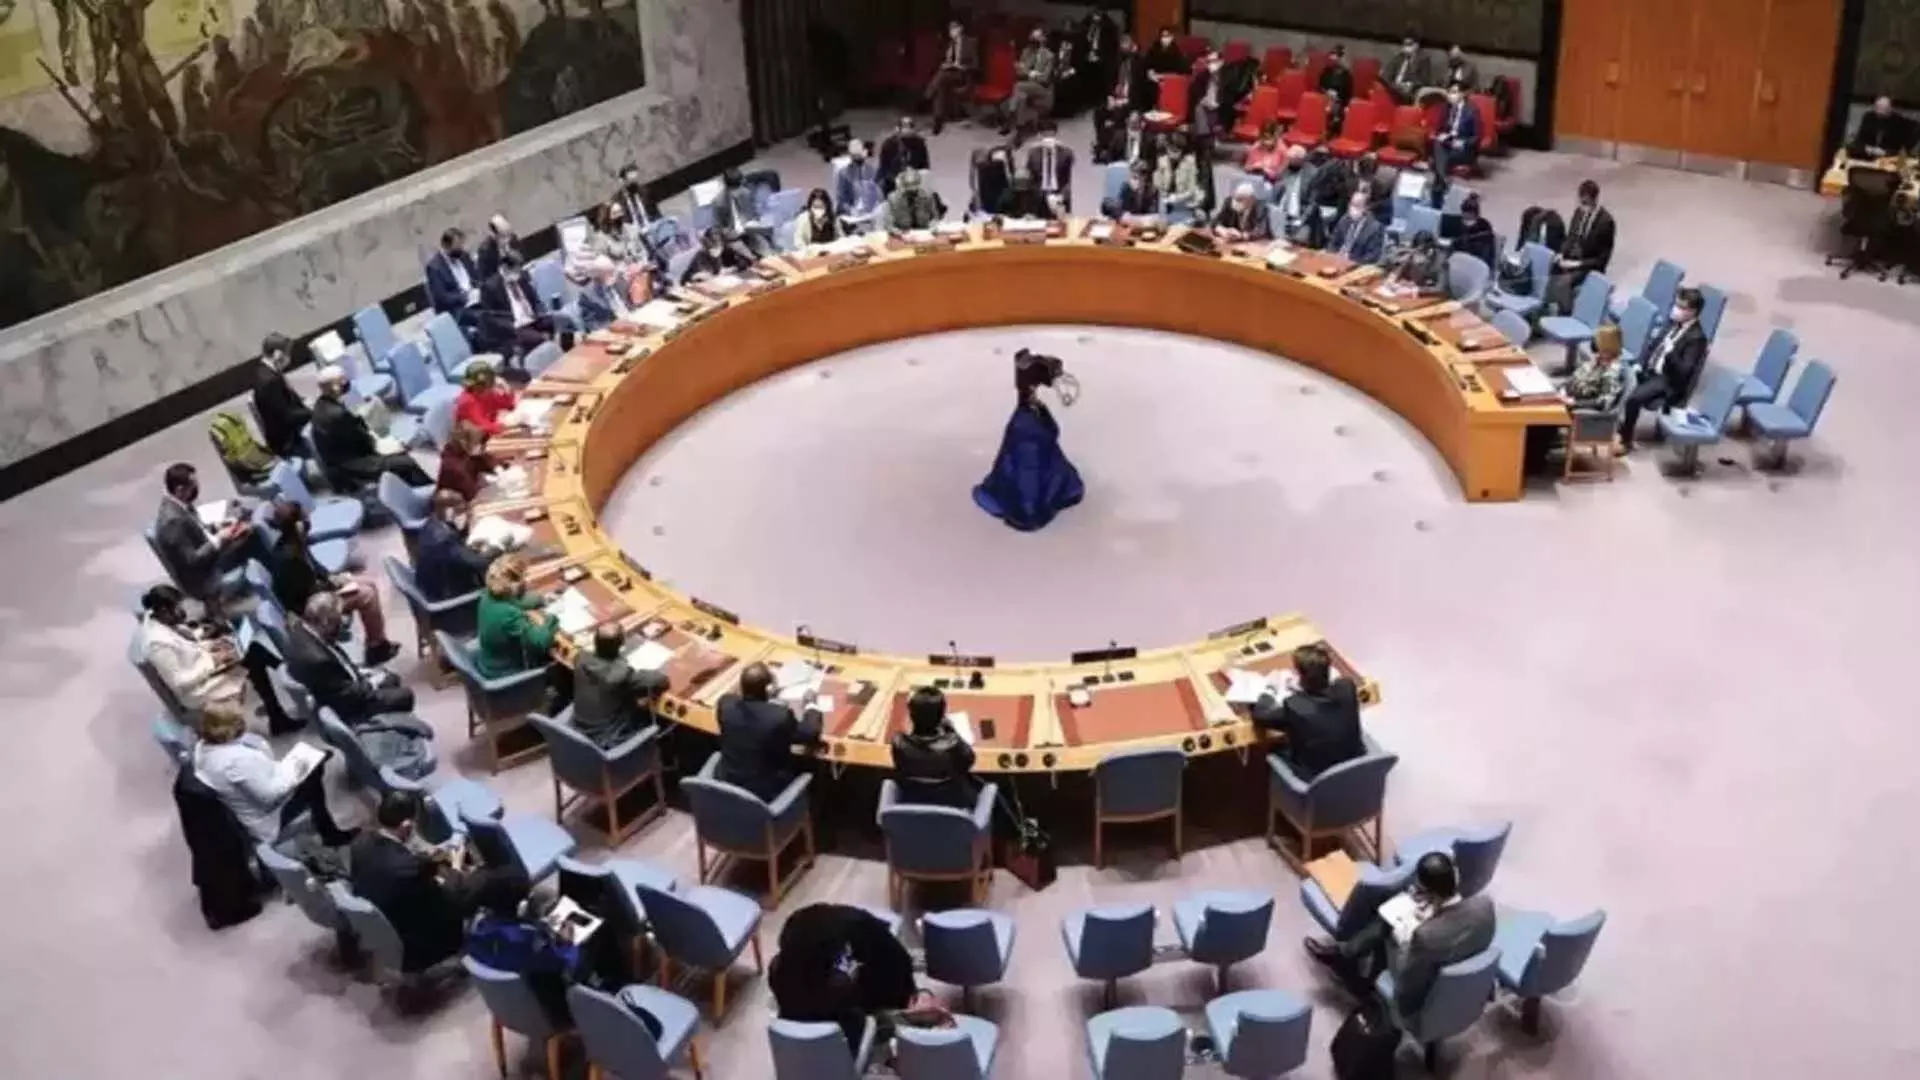 ईरान हमले पर यूएनएससी बैठक में केवल इस बात पर सहमति बनी कि मध्य पूर्व में तनाव नहीं बढ़ना चाहिए